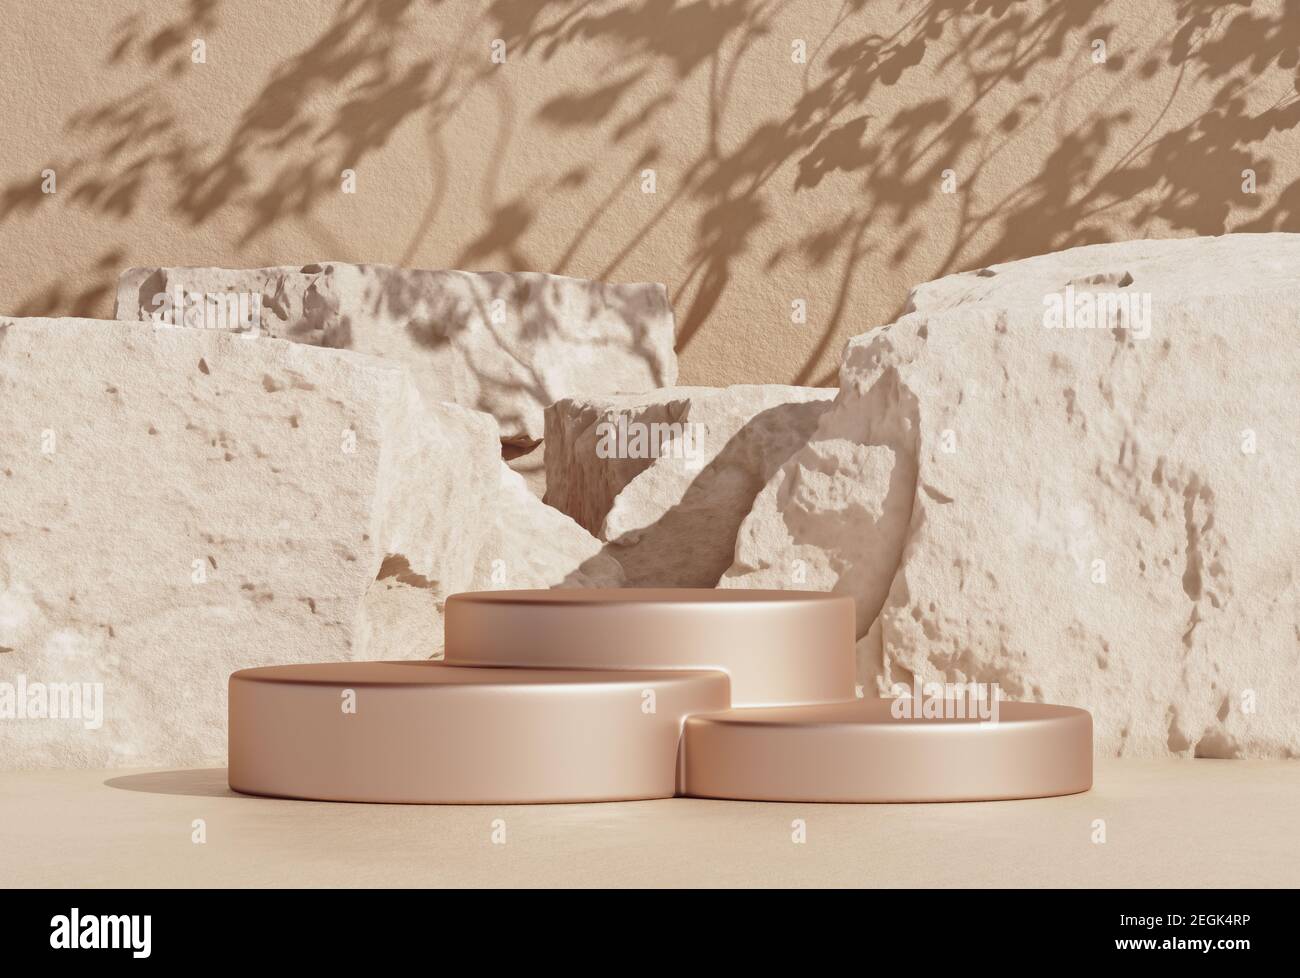 Maquette d'arrière-plan en forme de pierre avec podium de produit doré pour l'exposition ou la présentation de produits cosmétiques, rendu 3d. Banque D'Images